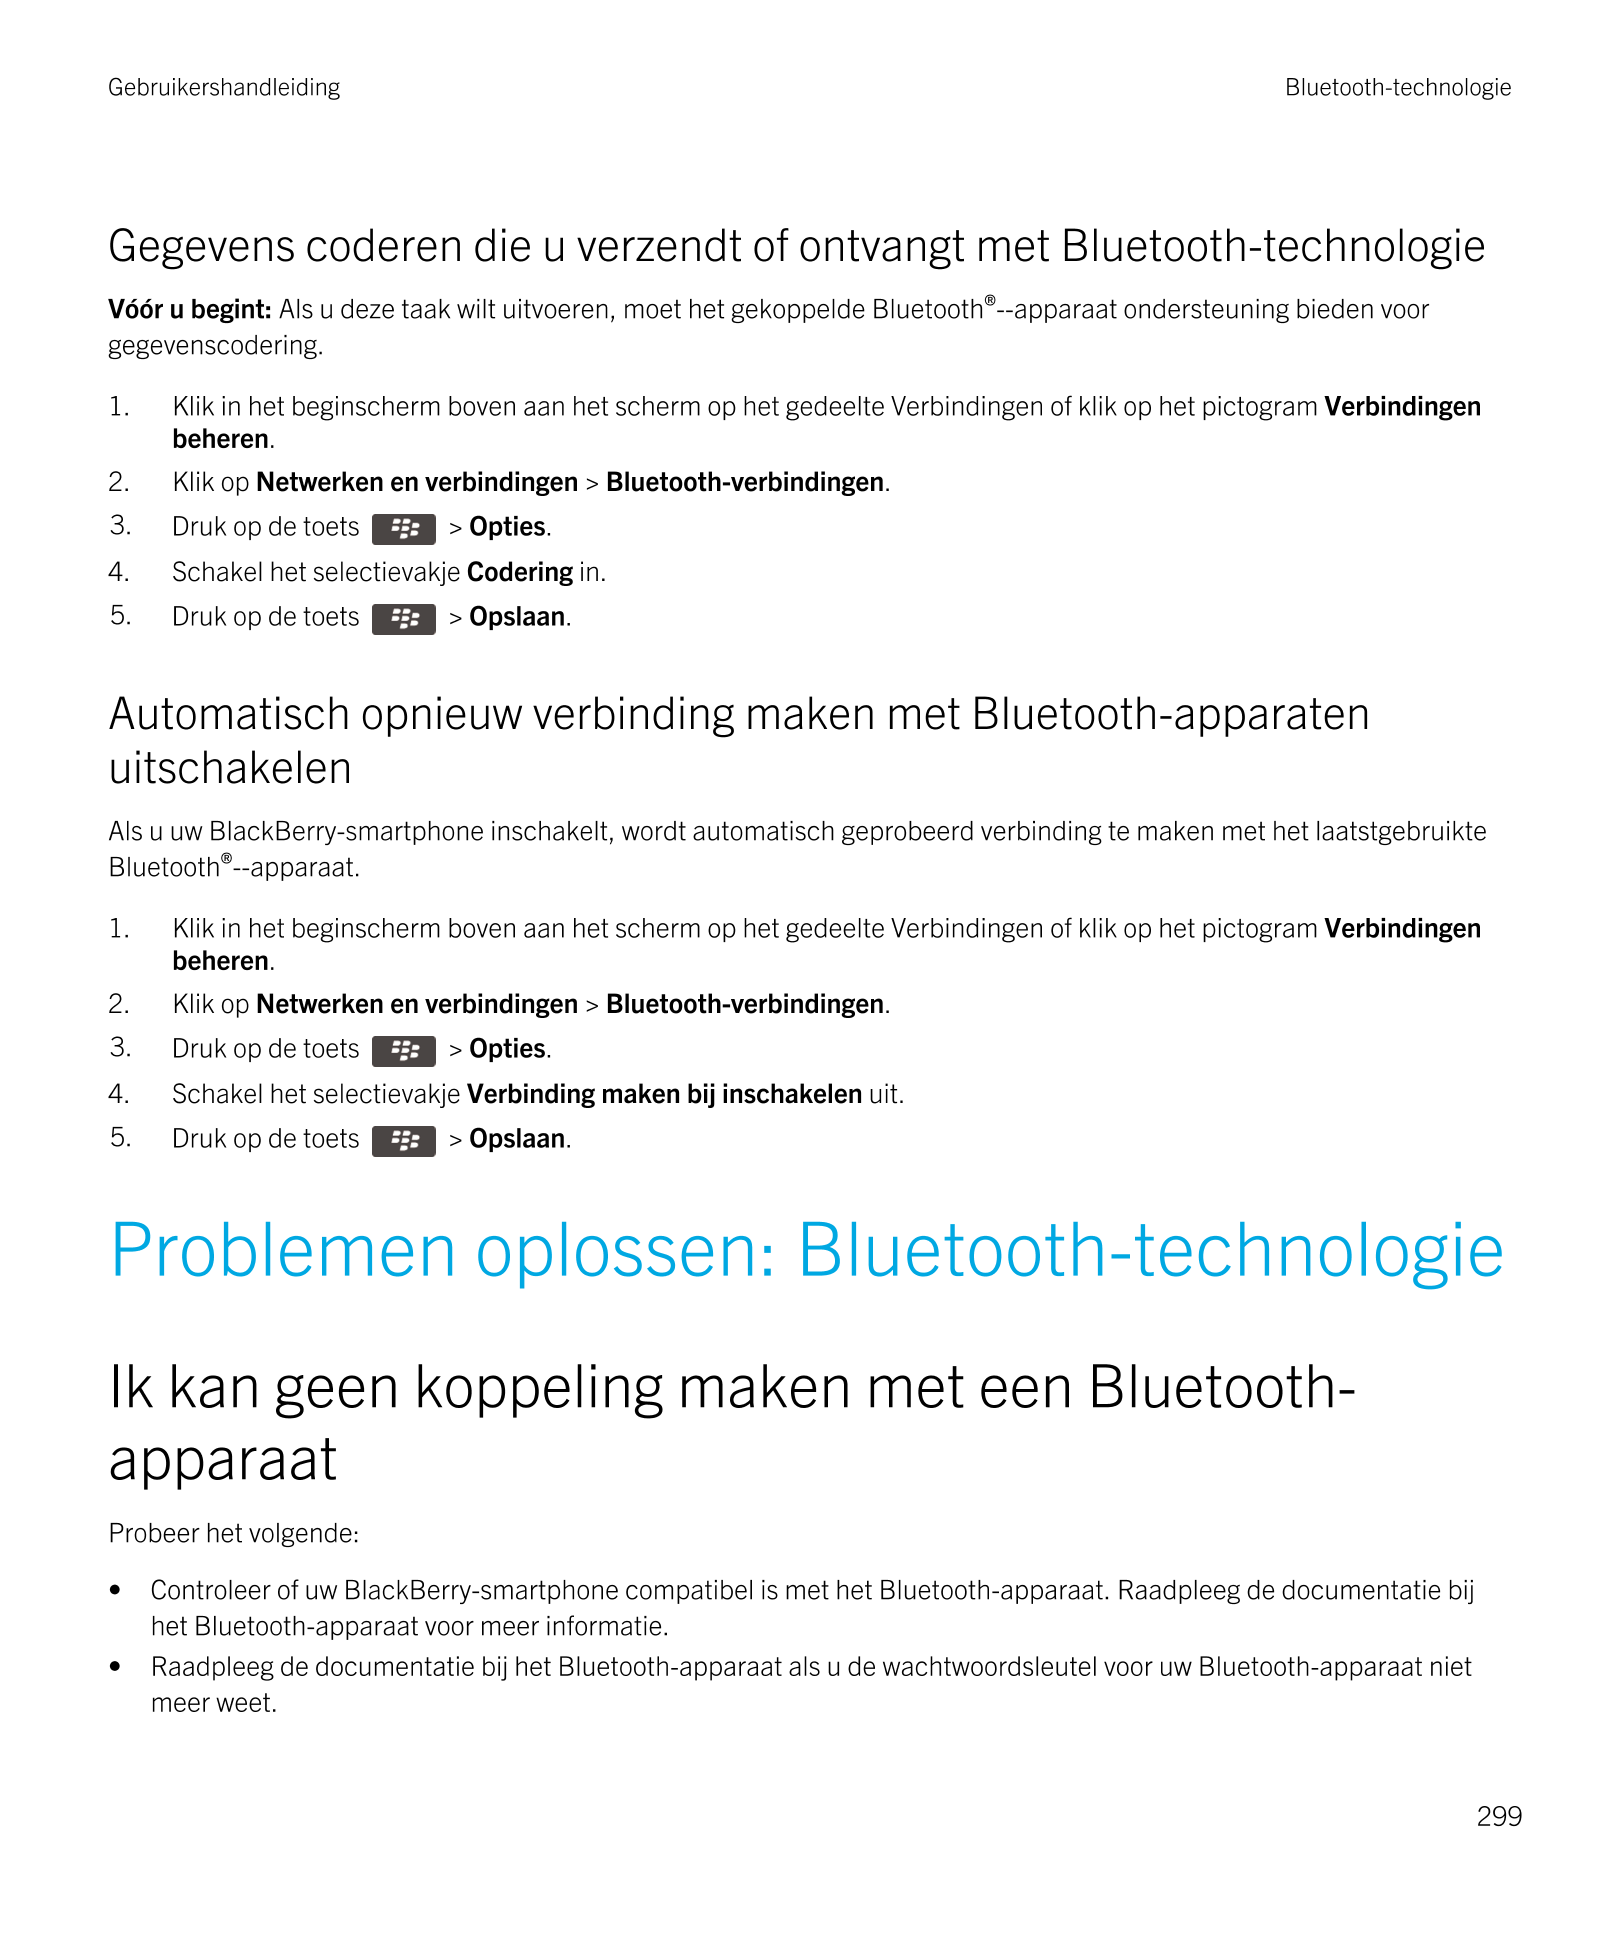 Gebruikershandleiding Bluetooth-technologie
Gegevens coderen die u verzendt of ontvangt met  Bluetooth-technologie
Vóór u begint